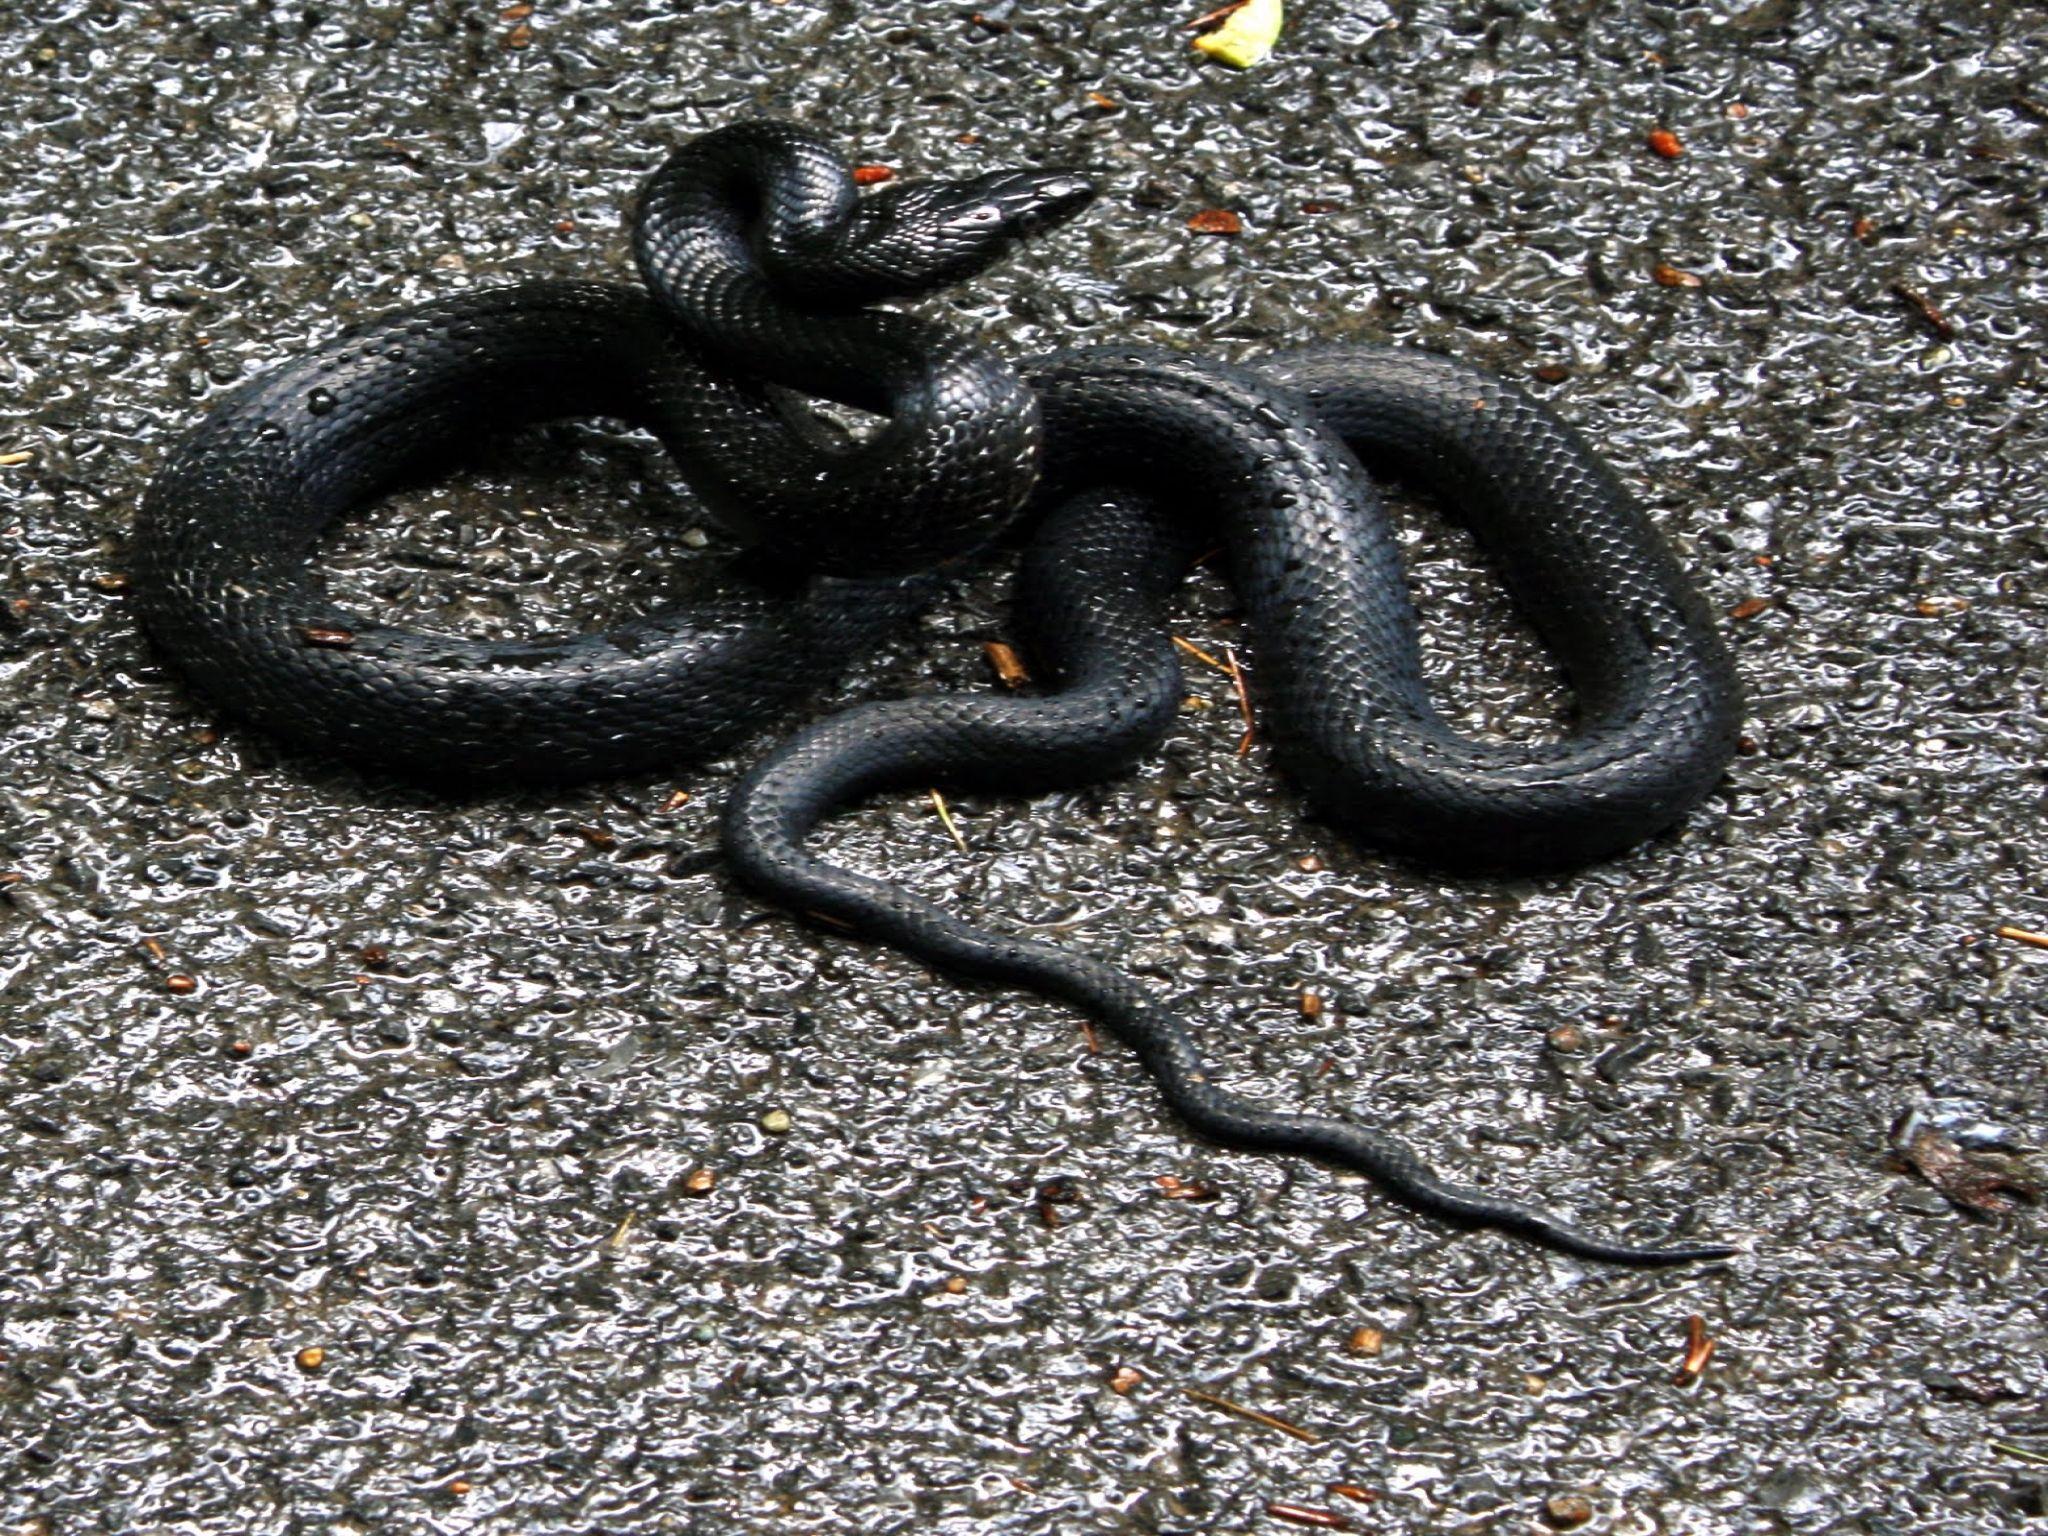 image of a garden snake